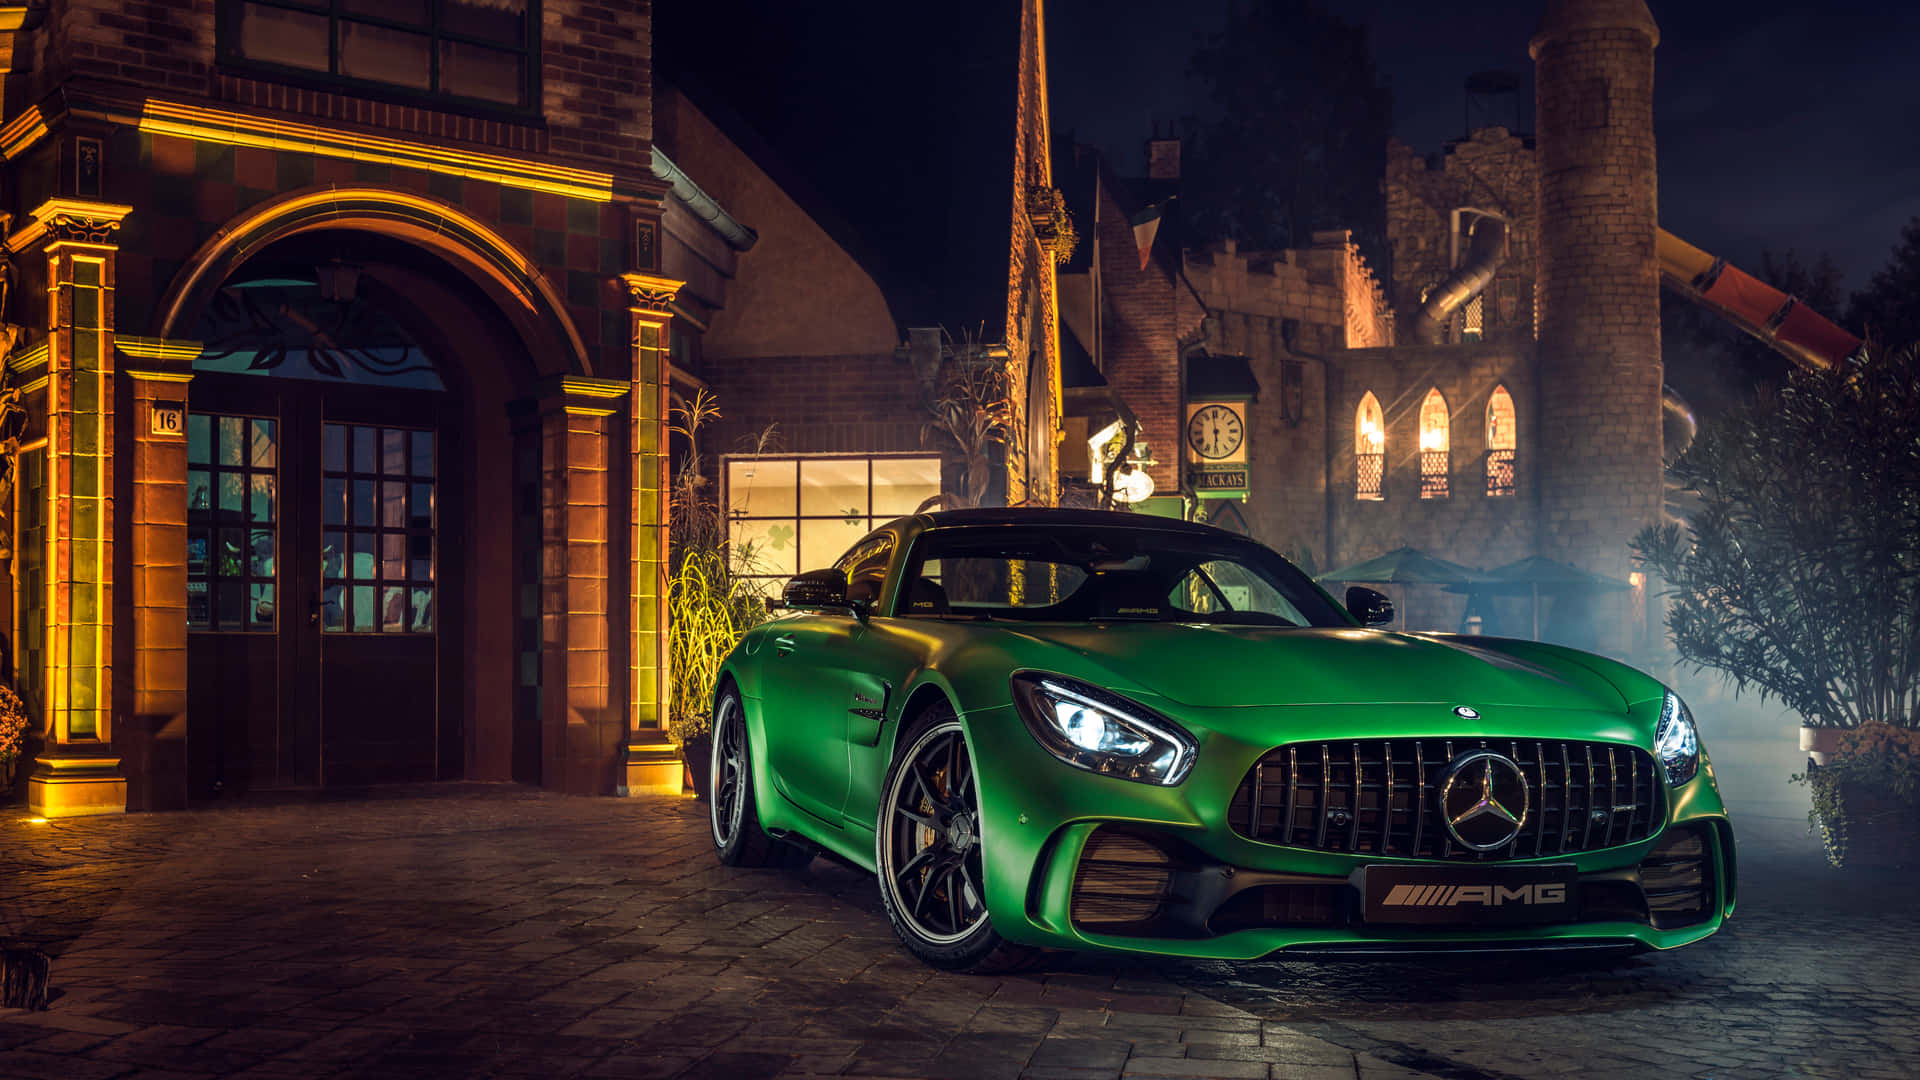 Grünerluxuriöser Hintergrund Mit Dem Mercedes Benz Amg Gt R Auto